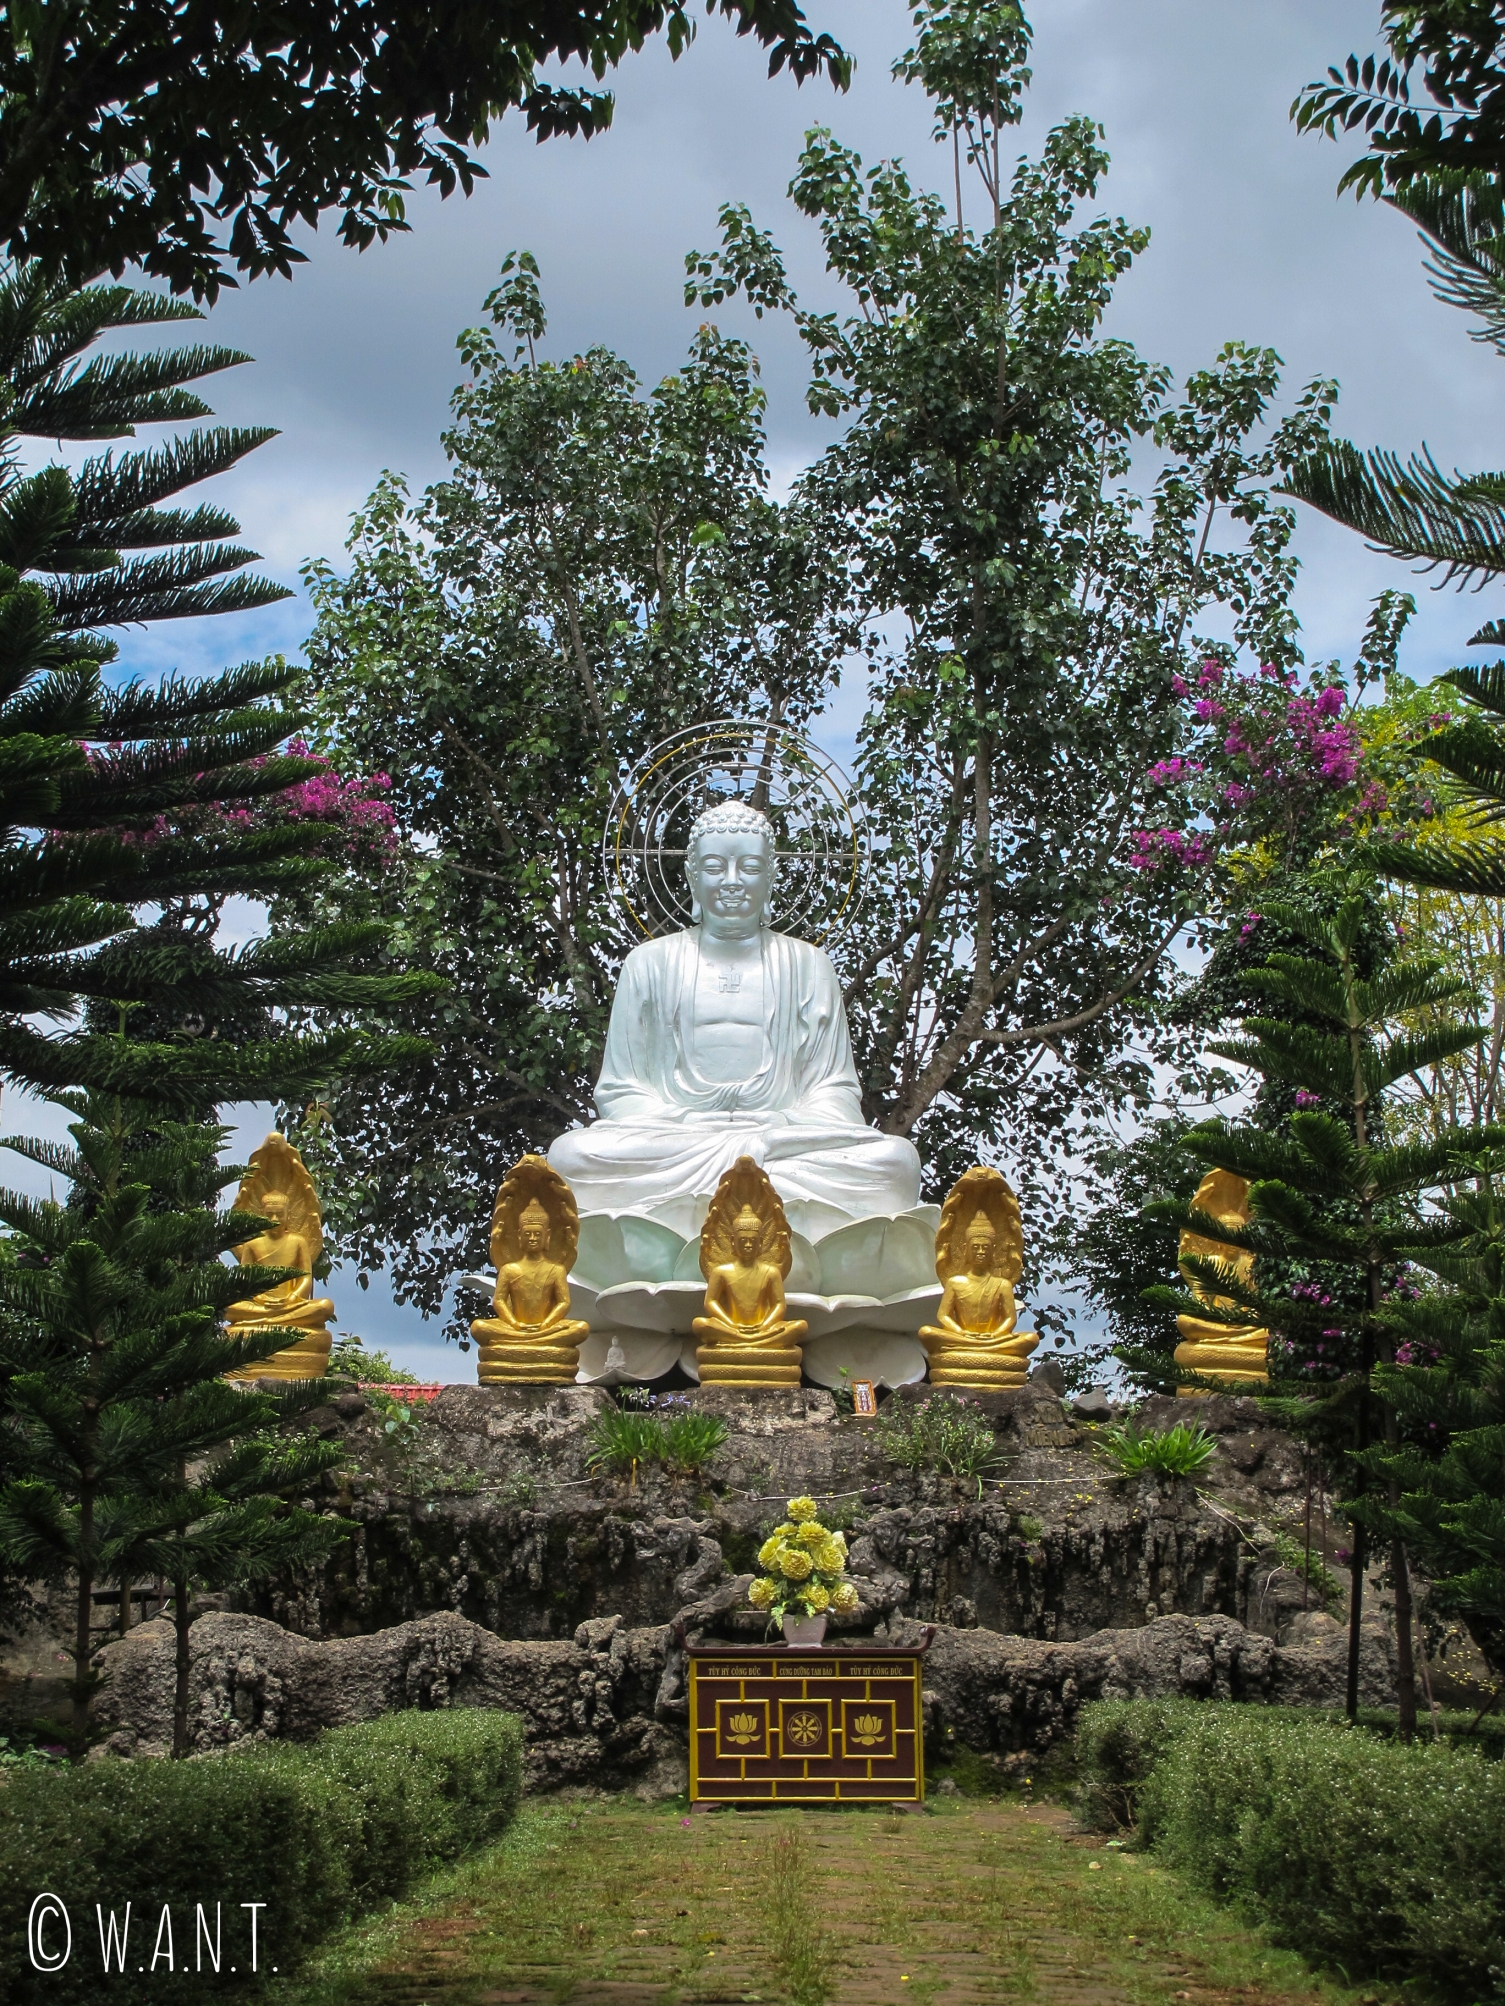 Représentation de Bouddha dans les jardins de la pagode Linh An Tu près de Da Lat